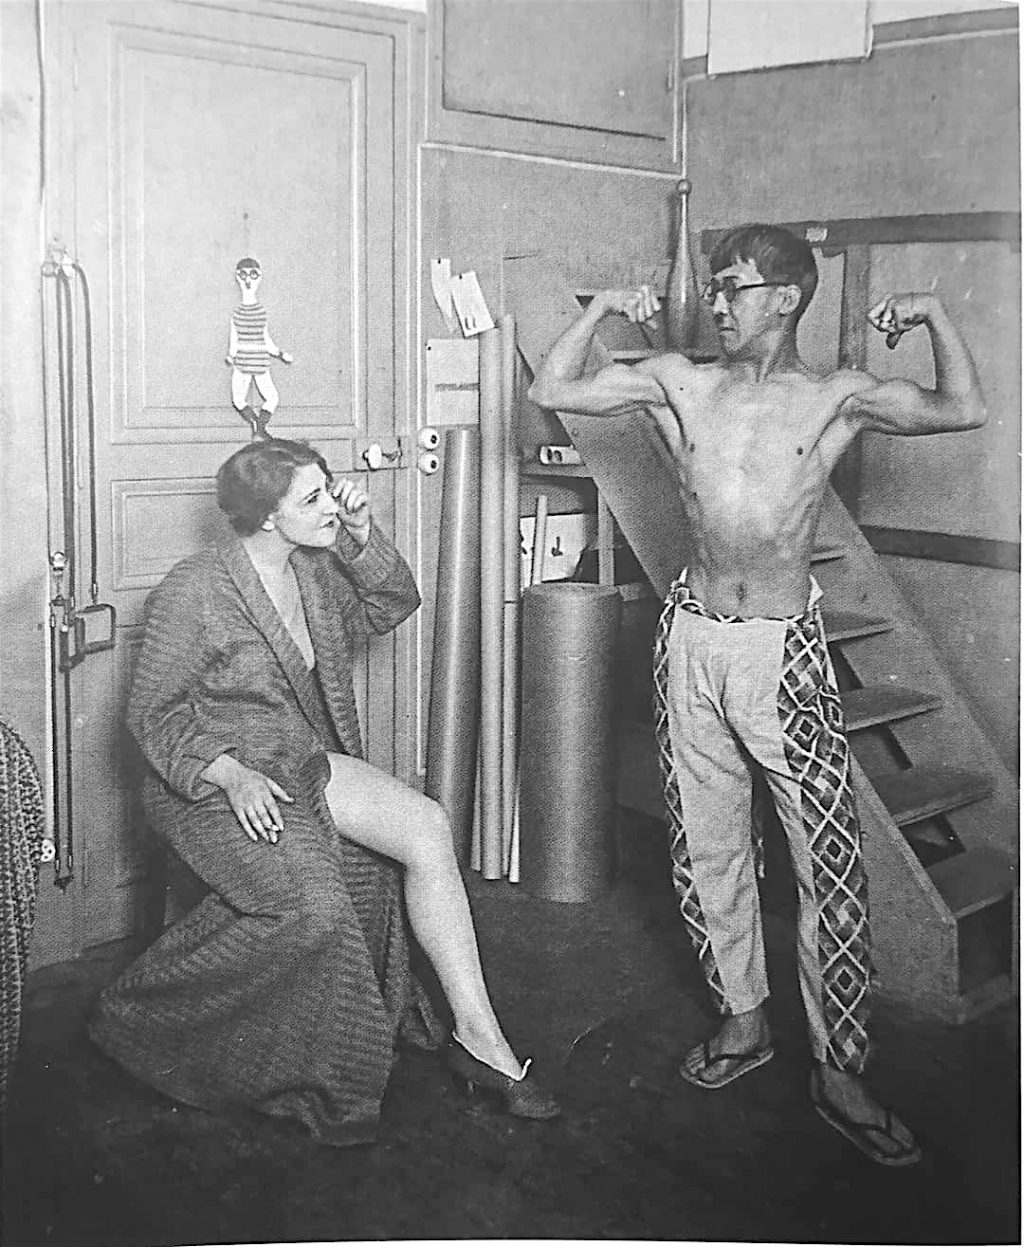 藤田ユキと藤田嗣治 パリ、アトリエ 1928年 Yuki and Tsuguharu Foujita at home:atelier in Paris, 1928